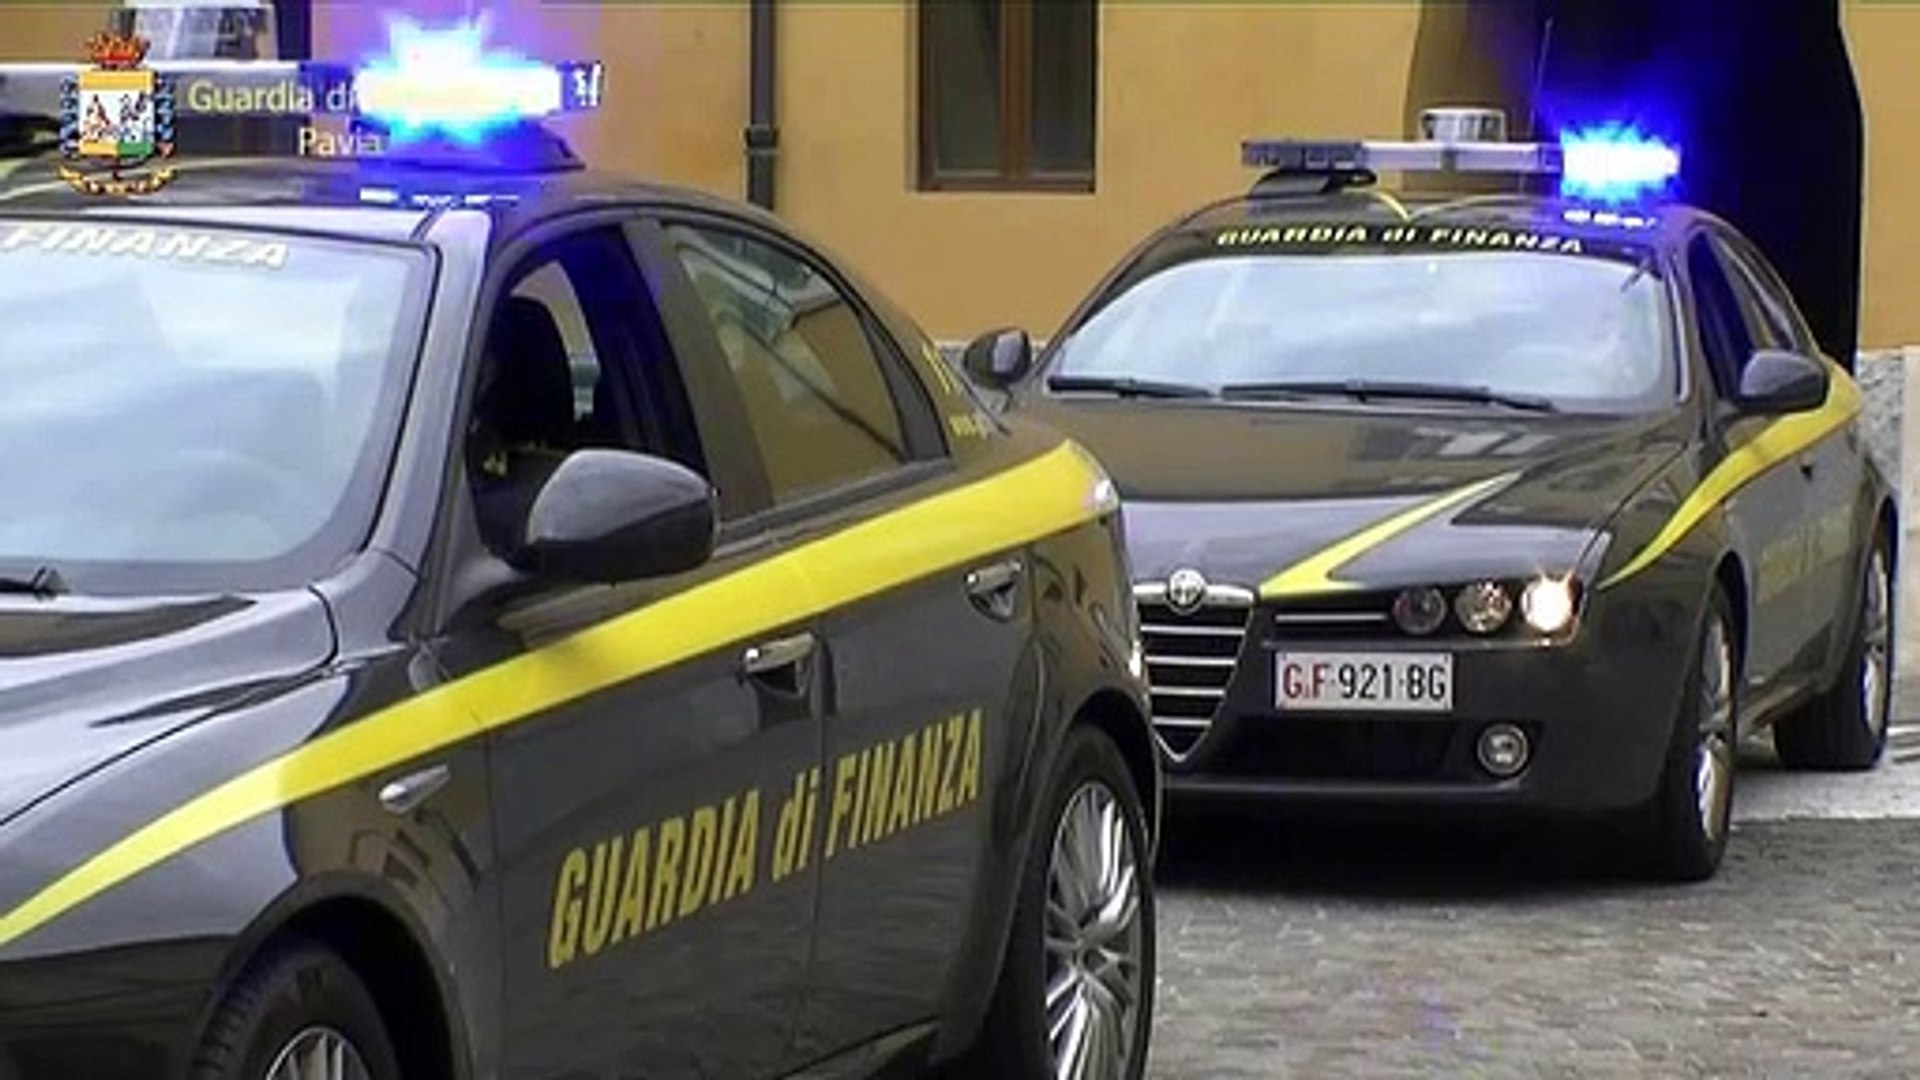 Guardia di Finanza Pavia - operazione conti in sospeso - Video Dailymotion